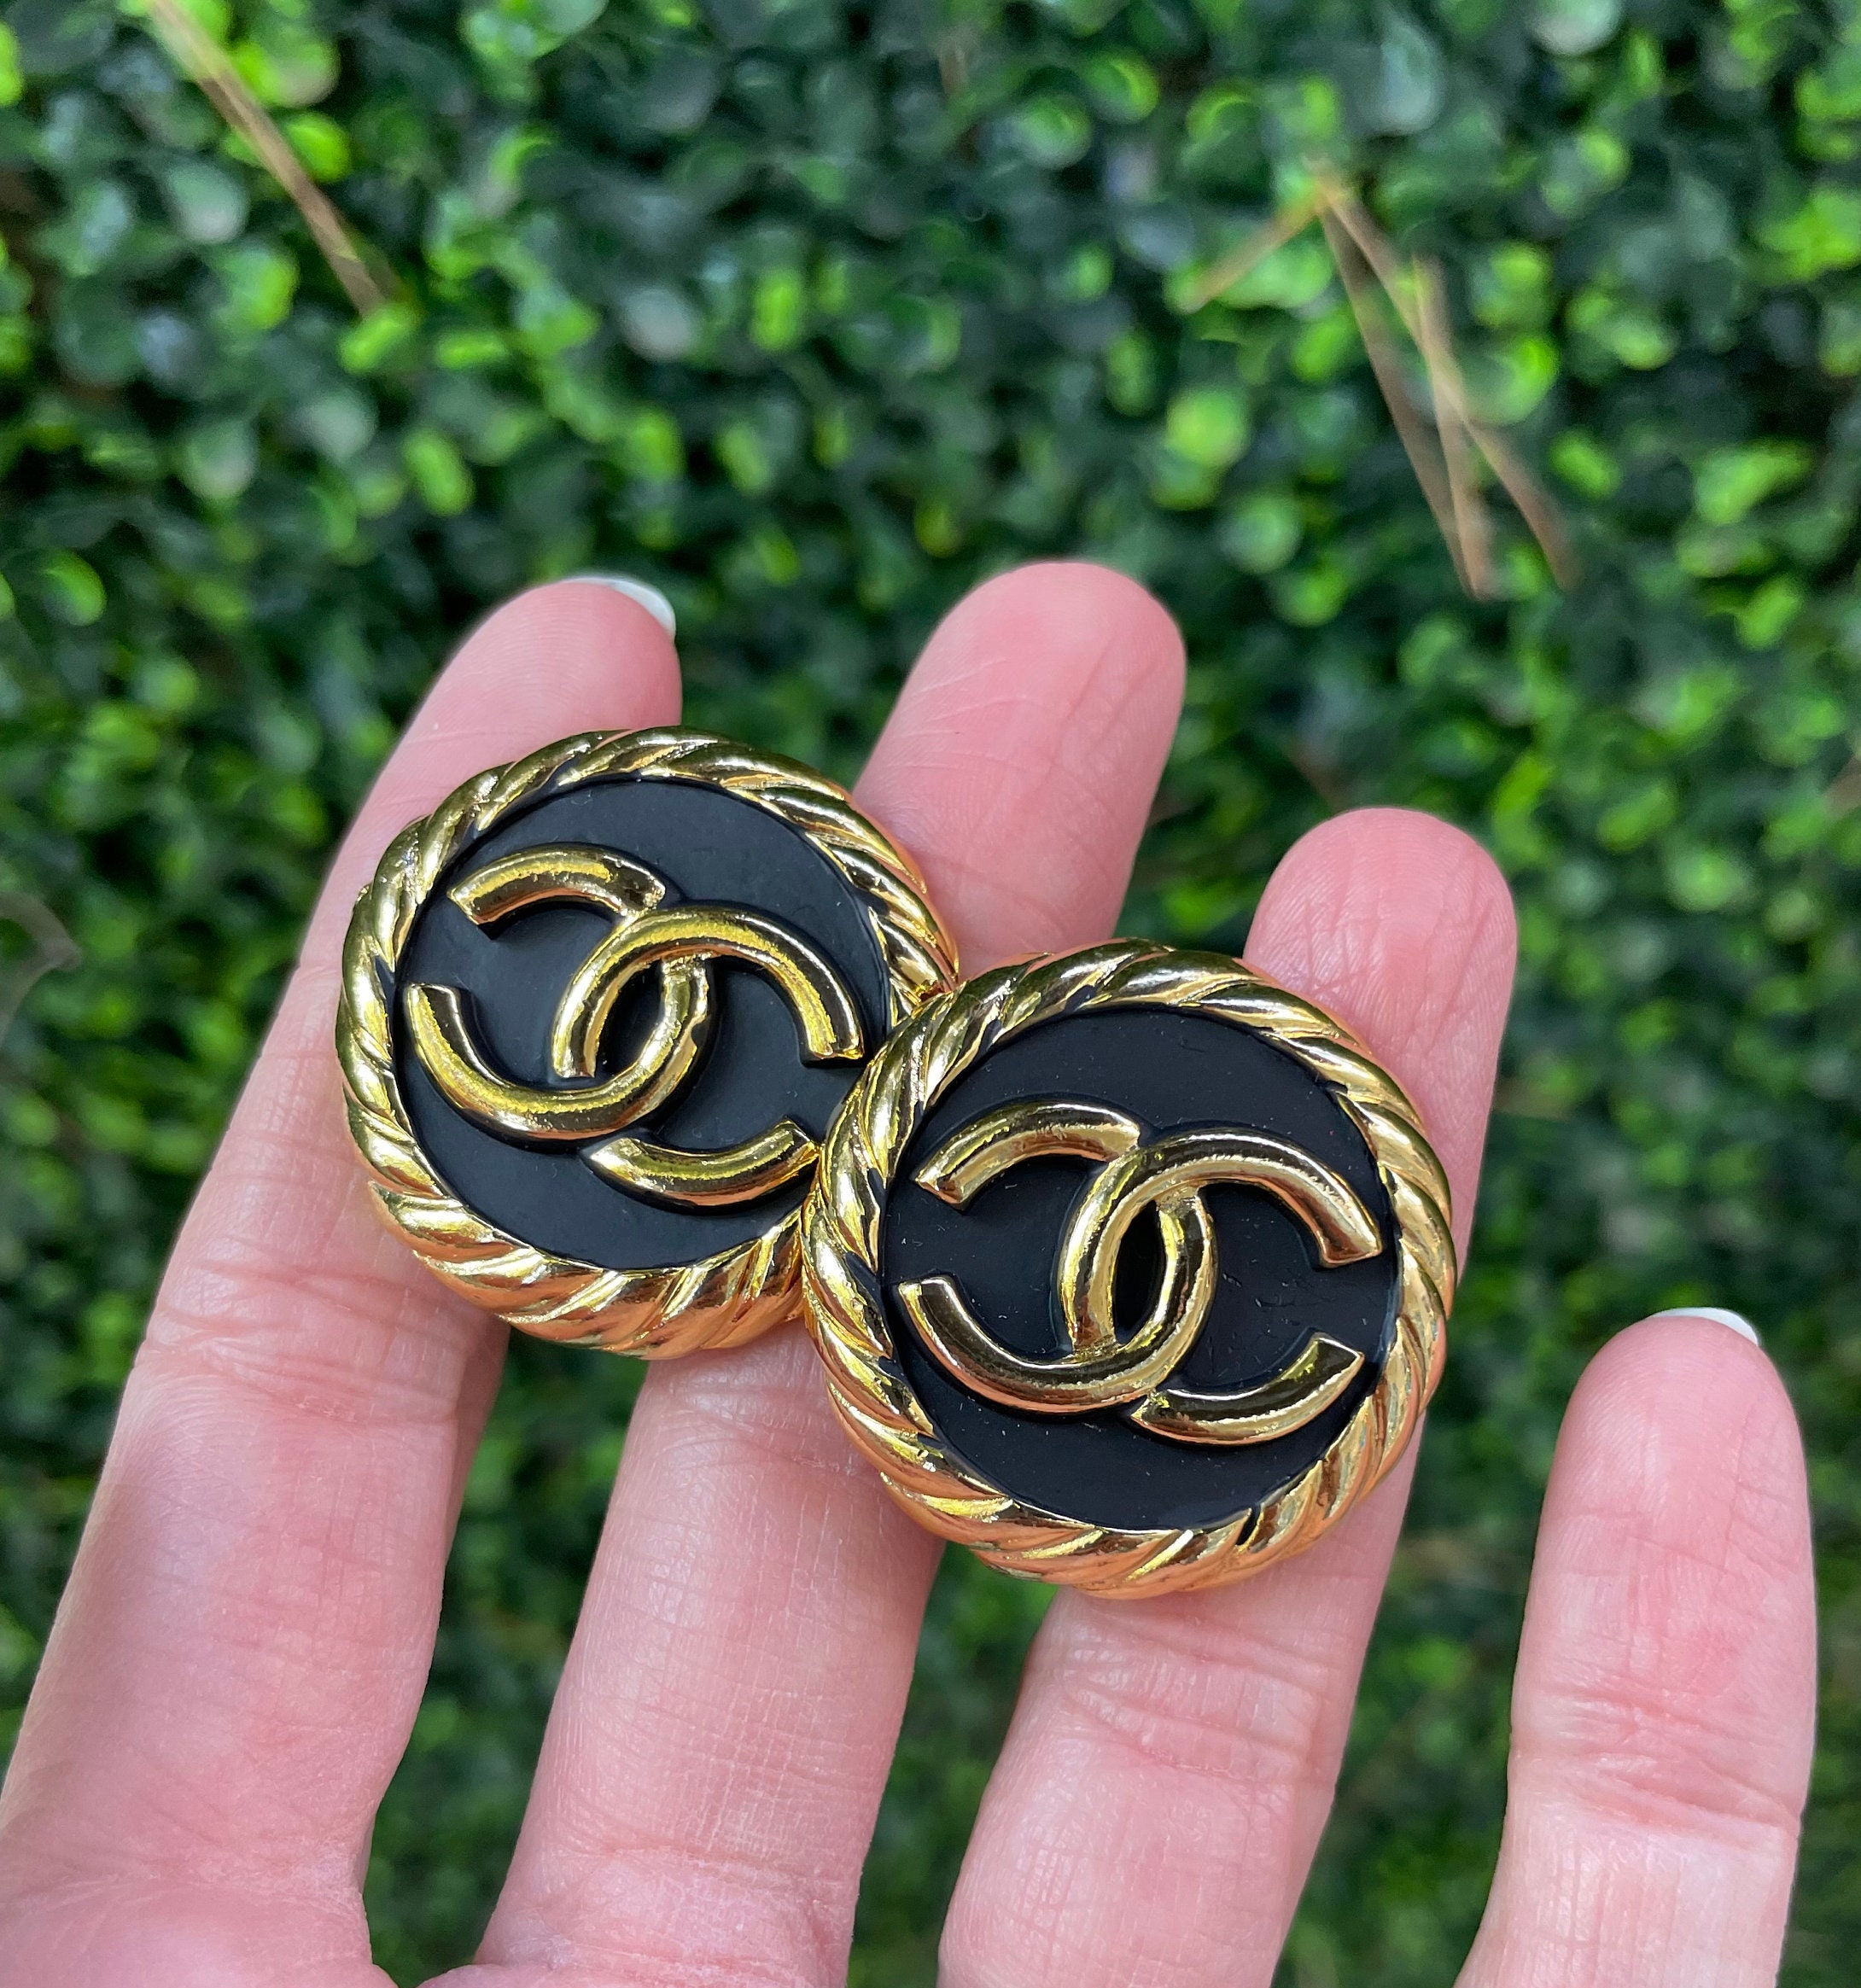 chanel earrings studs gold